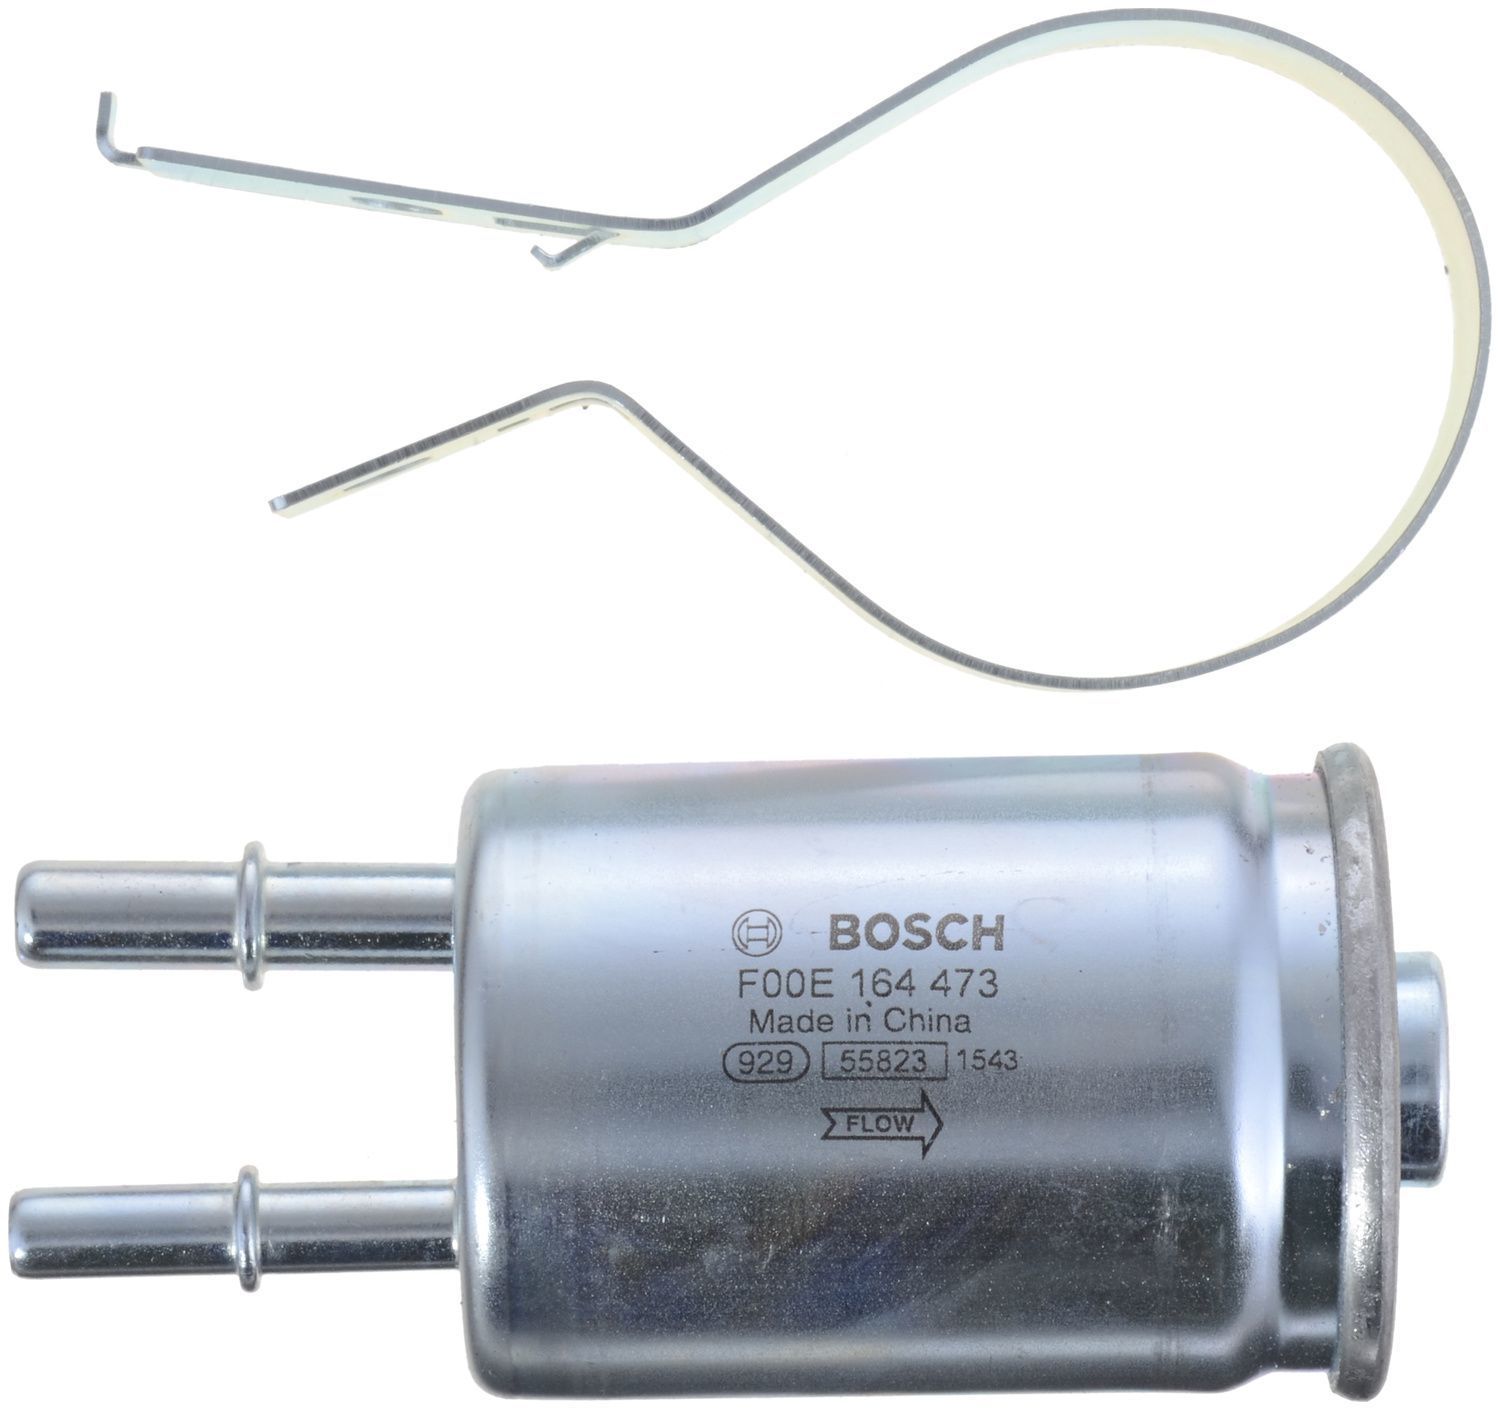 BOSCH - Gasoline Fuel Filter - BOS 77032WS